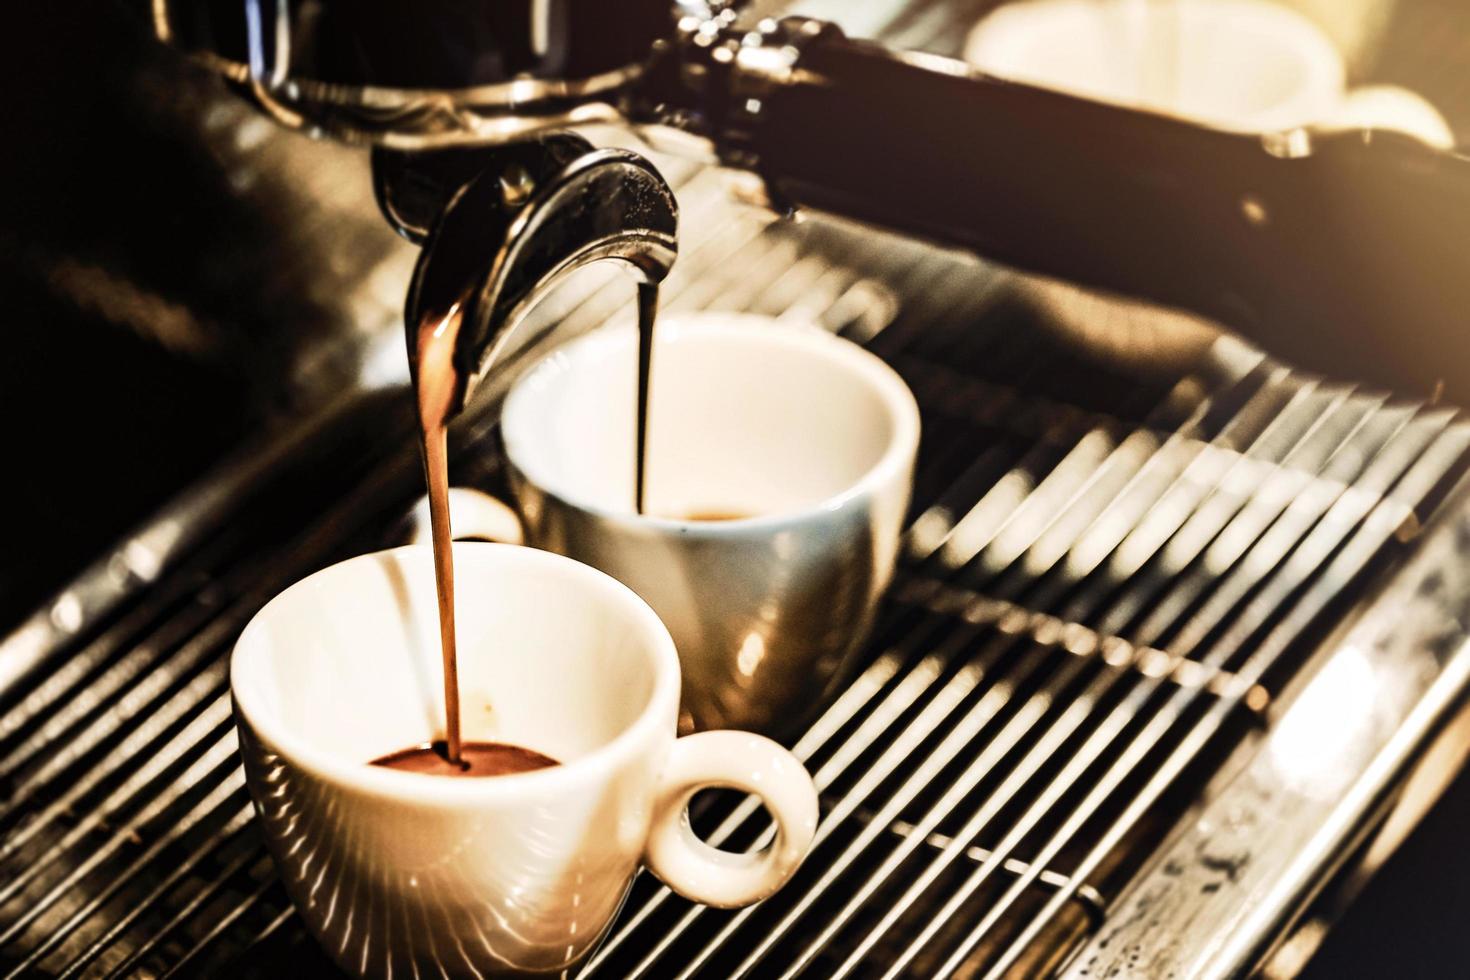 máquina de café espresso preparando un café foto